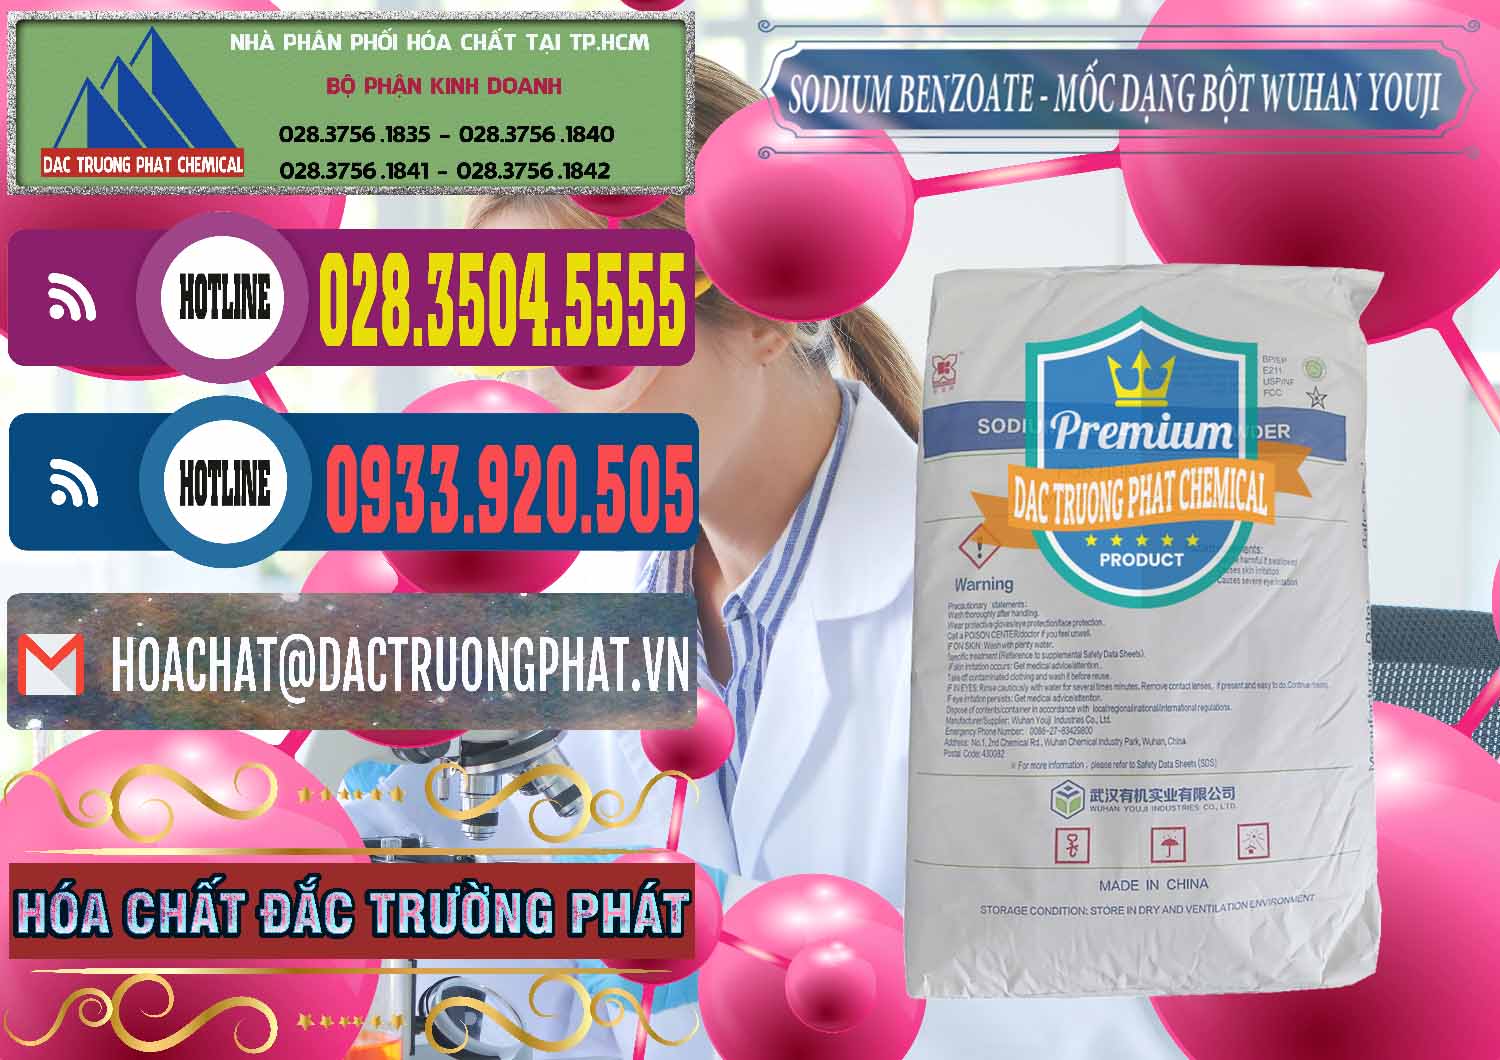 Nơi nhập khẩu _ bán Sodium Benzoate - Mốc Dạng Bột Food Grade Wuhan Youji Trung Quốc China - 0275 - Cty bán & cung cấp hóa chất tại TP.HCM - muabanhoachat.com.vn